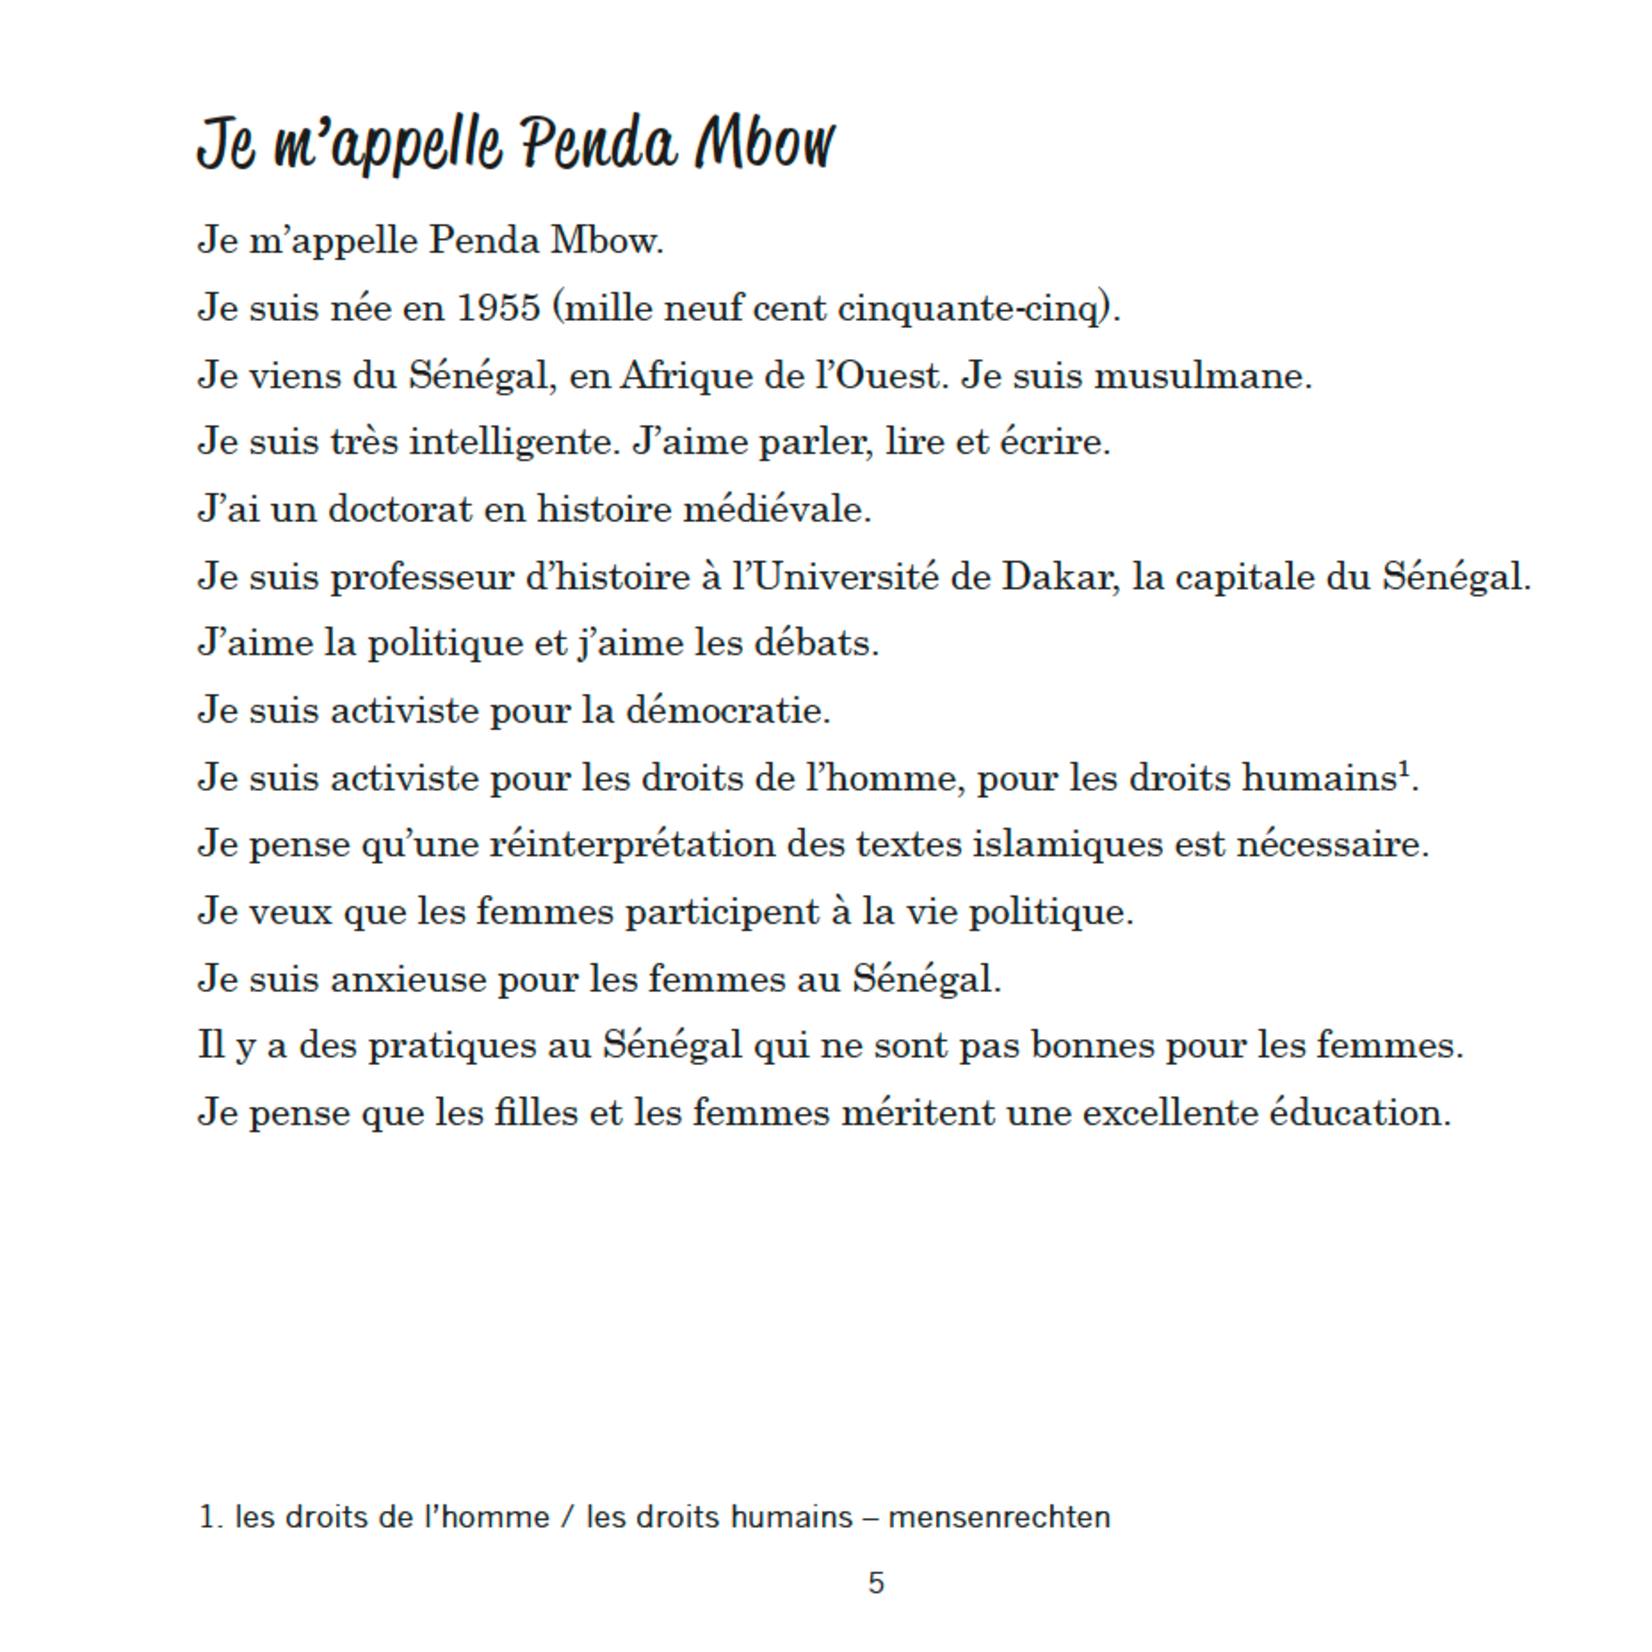 Arcos Publishers Qui parle français ? Deel 3 (French-Dutch)